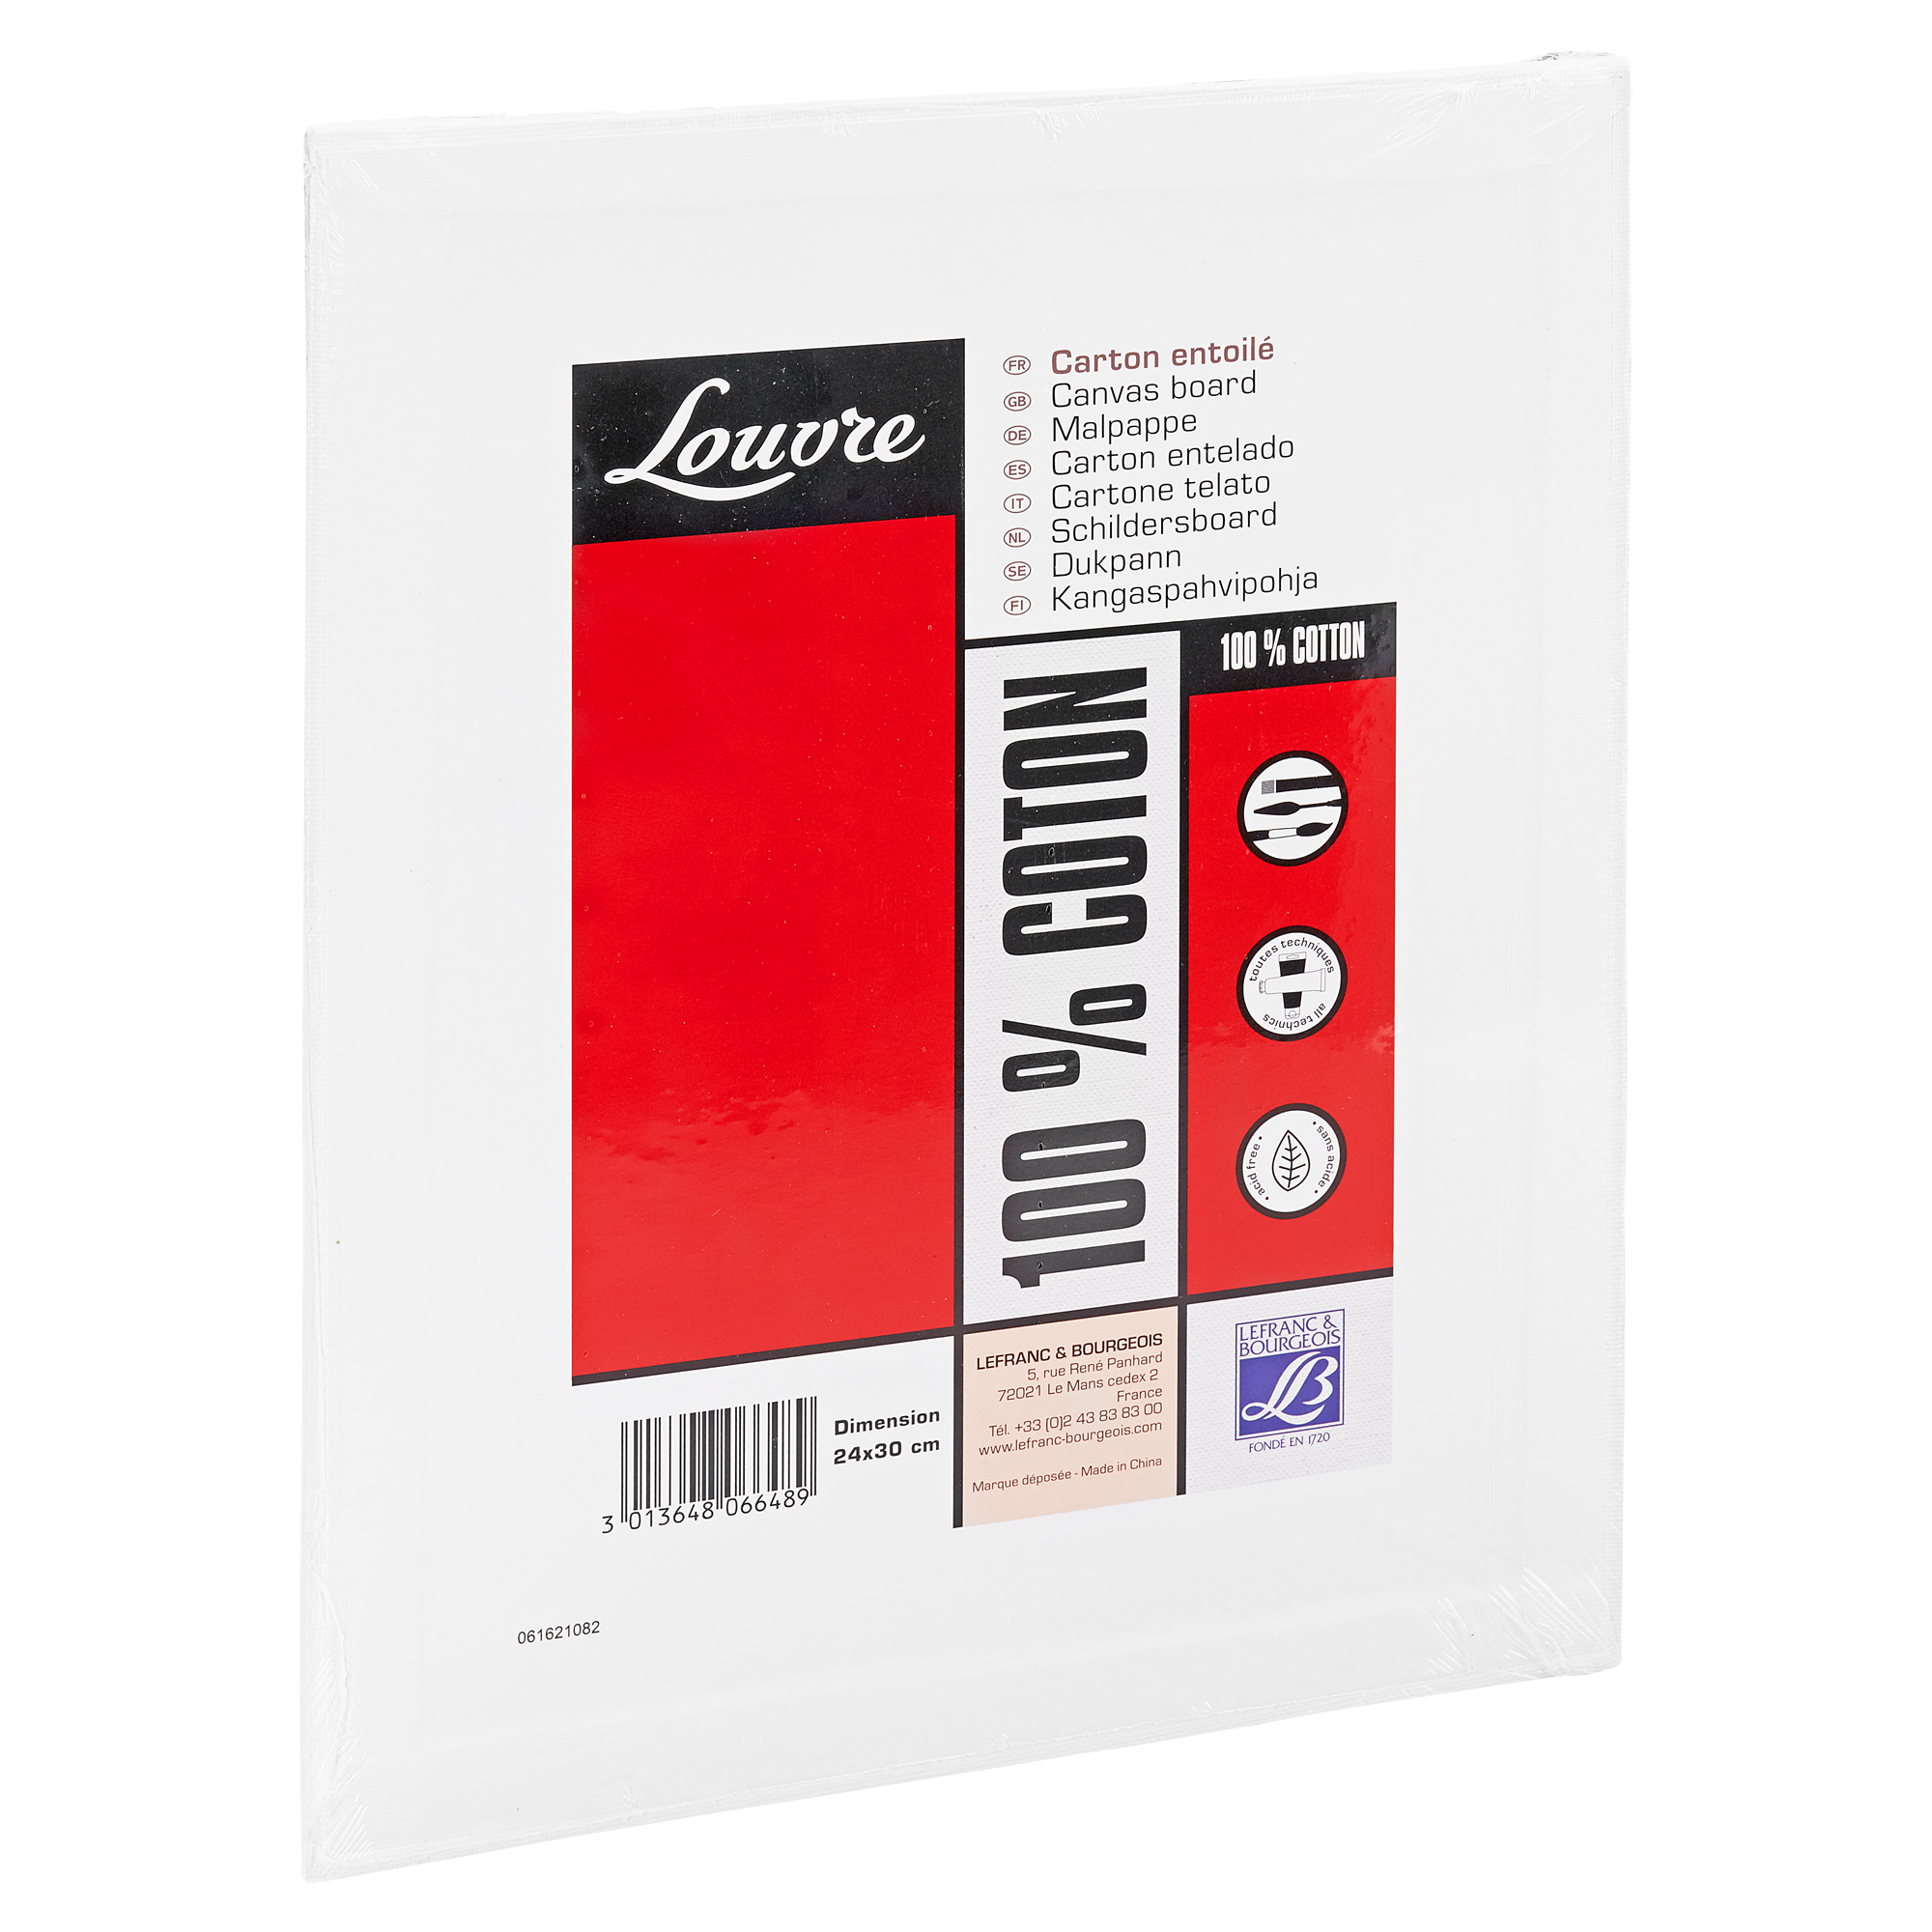 Malpappe "Louvre" Karton baumwollbespannt weiß 24 x 30 cm + product picture